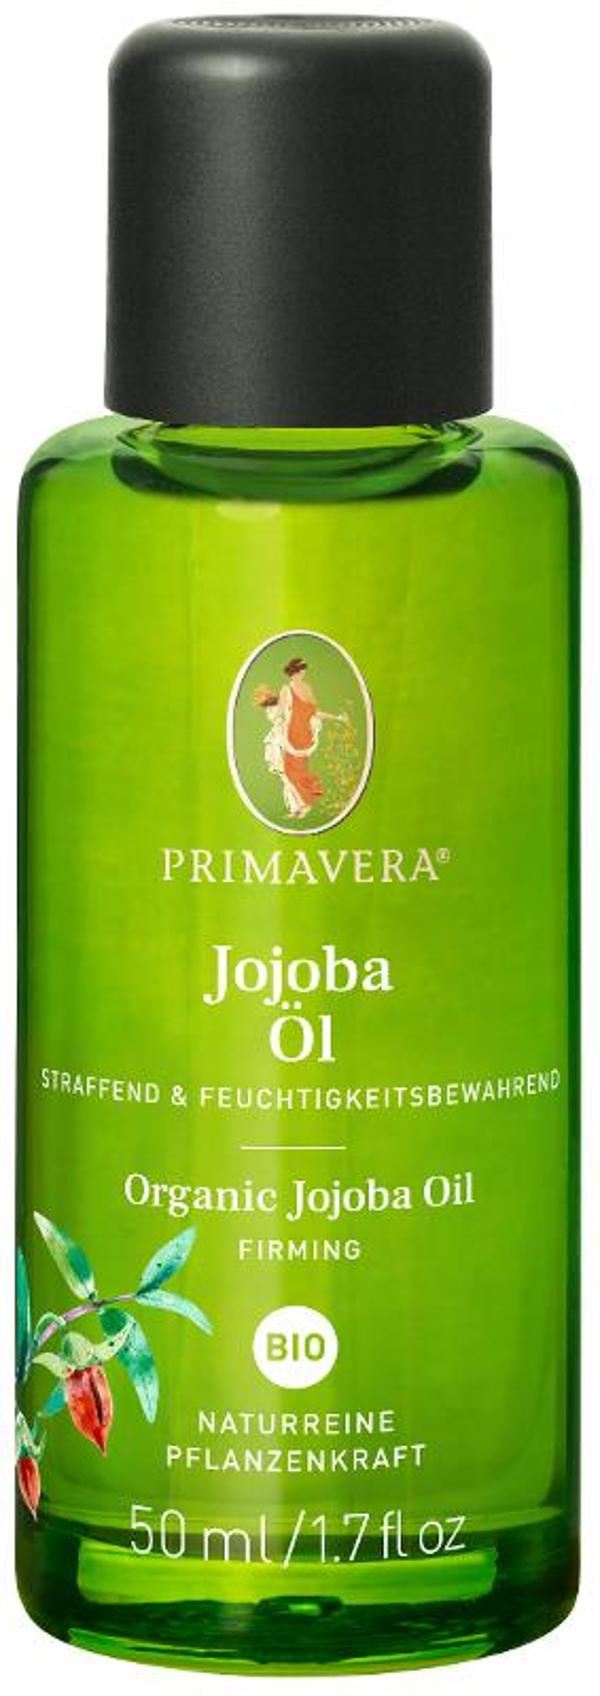 Produktfoto zu Primavera Jojobaöl - 50ml